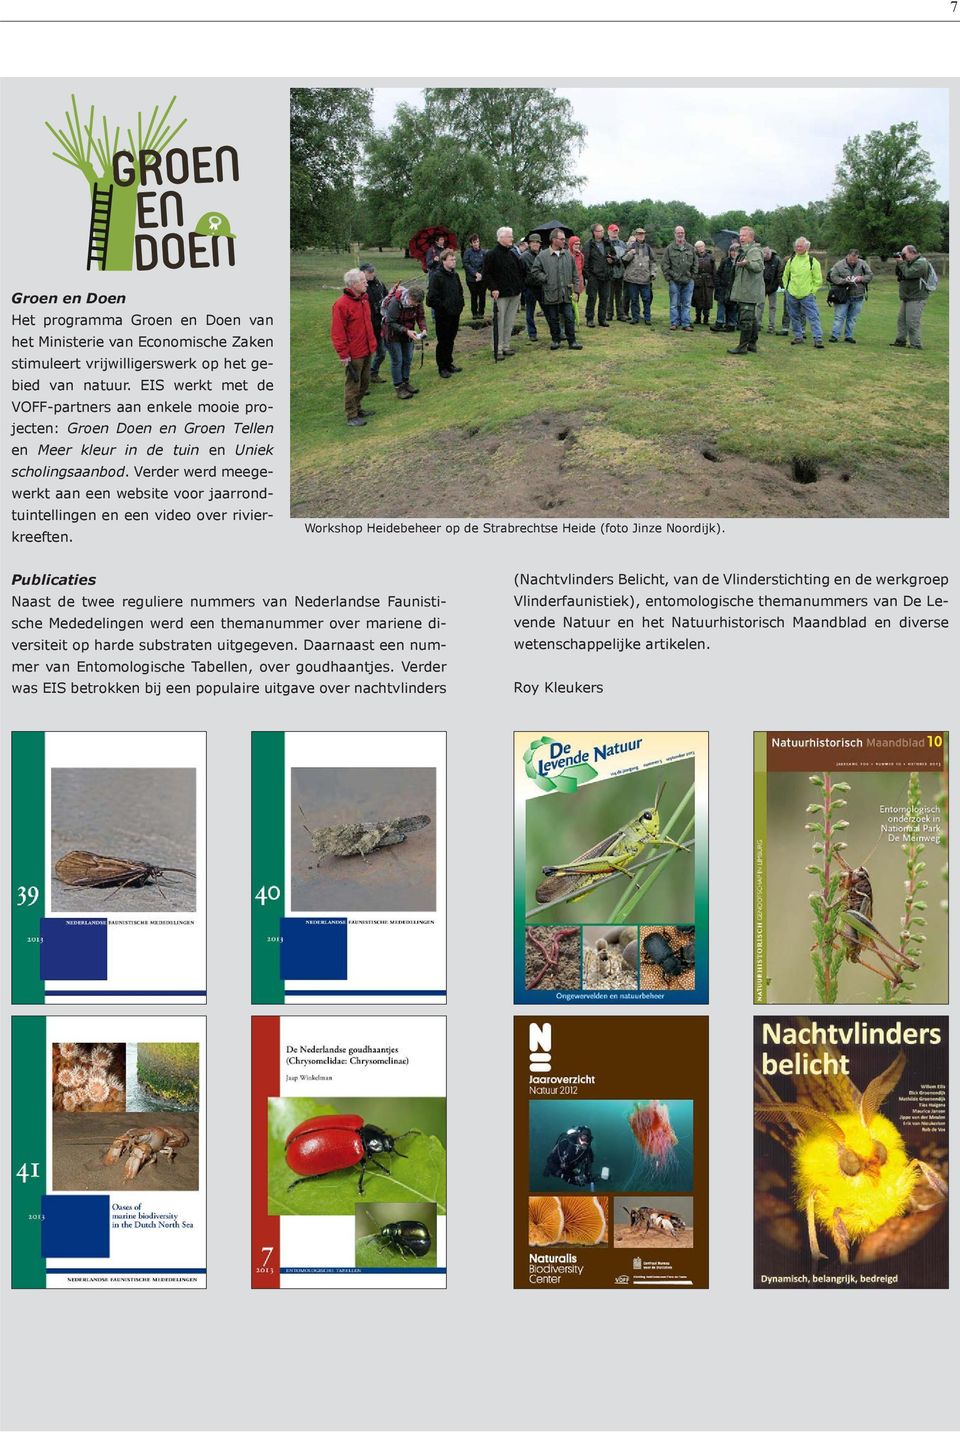 Verder werd meegewerkt aan een website voor jaarrondtuintellingen en een video over rivierkreeften. Workshop Heidebeheer op de Strabrechtse Heide (foto Jinze Noordijk).